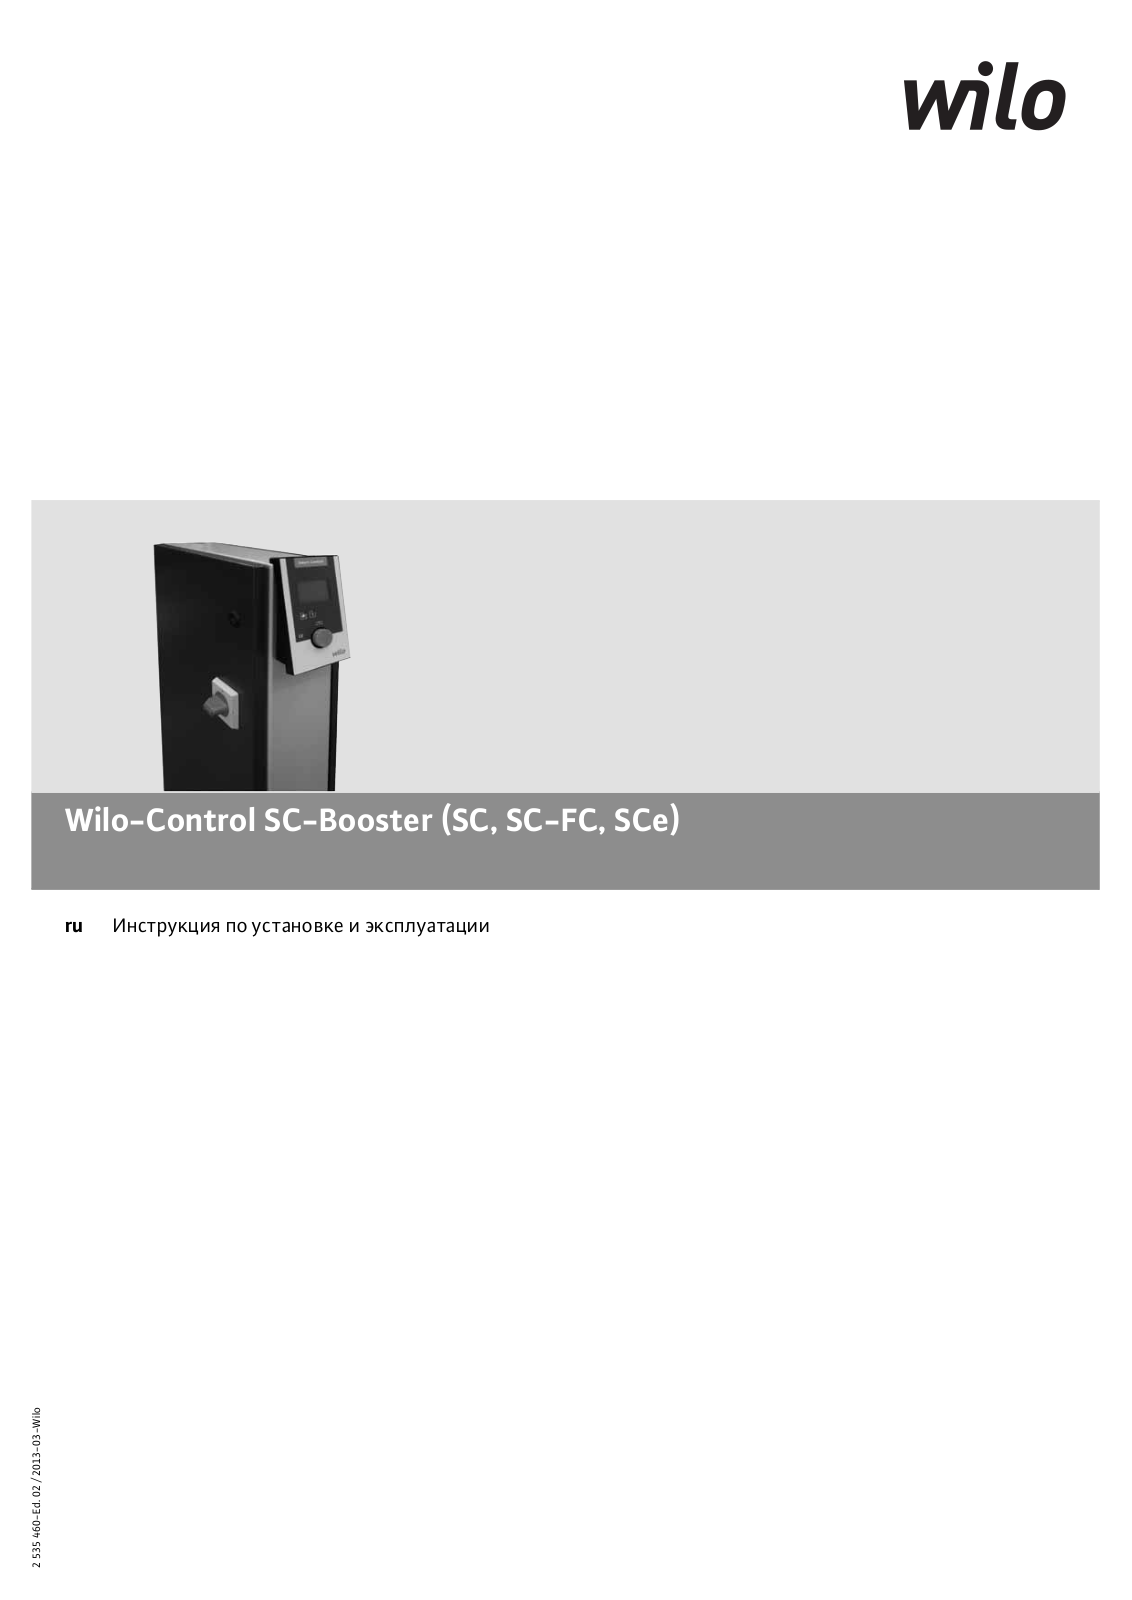 WILO SCe), SC-FC, SC-Booster User Manual